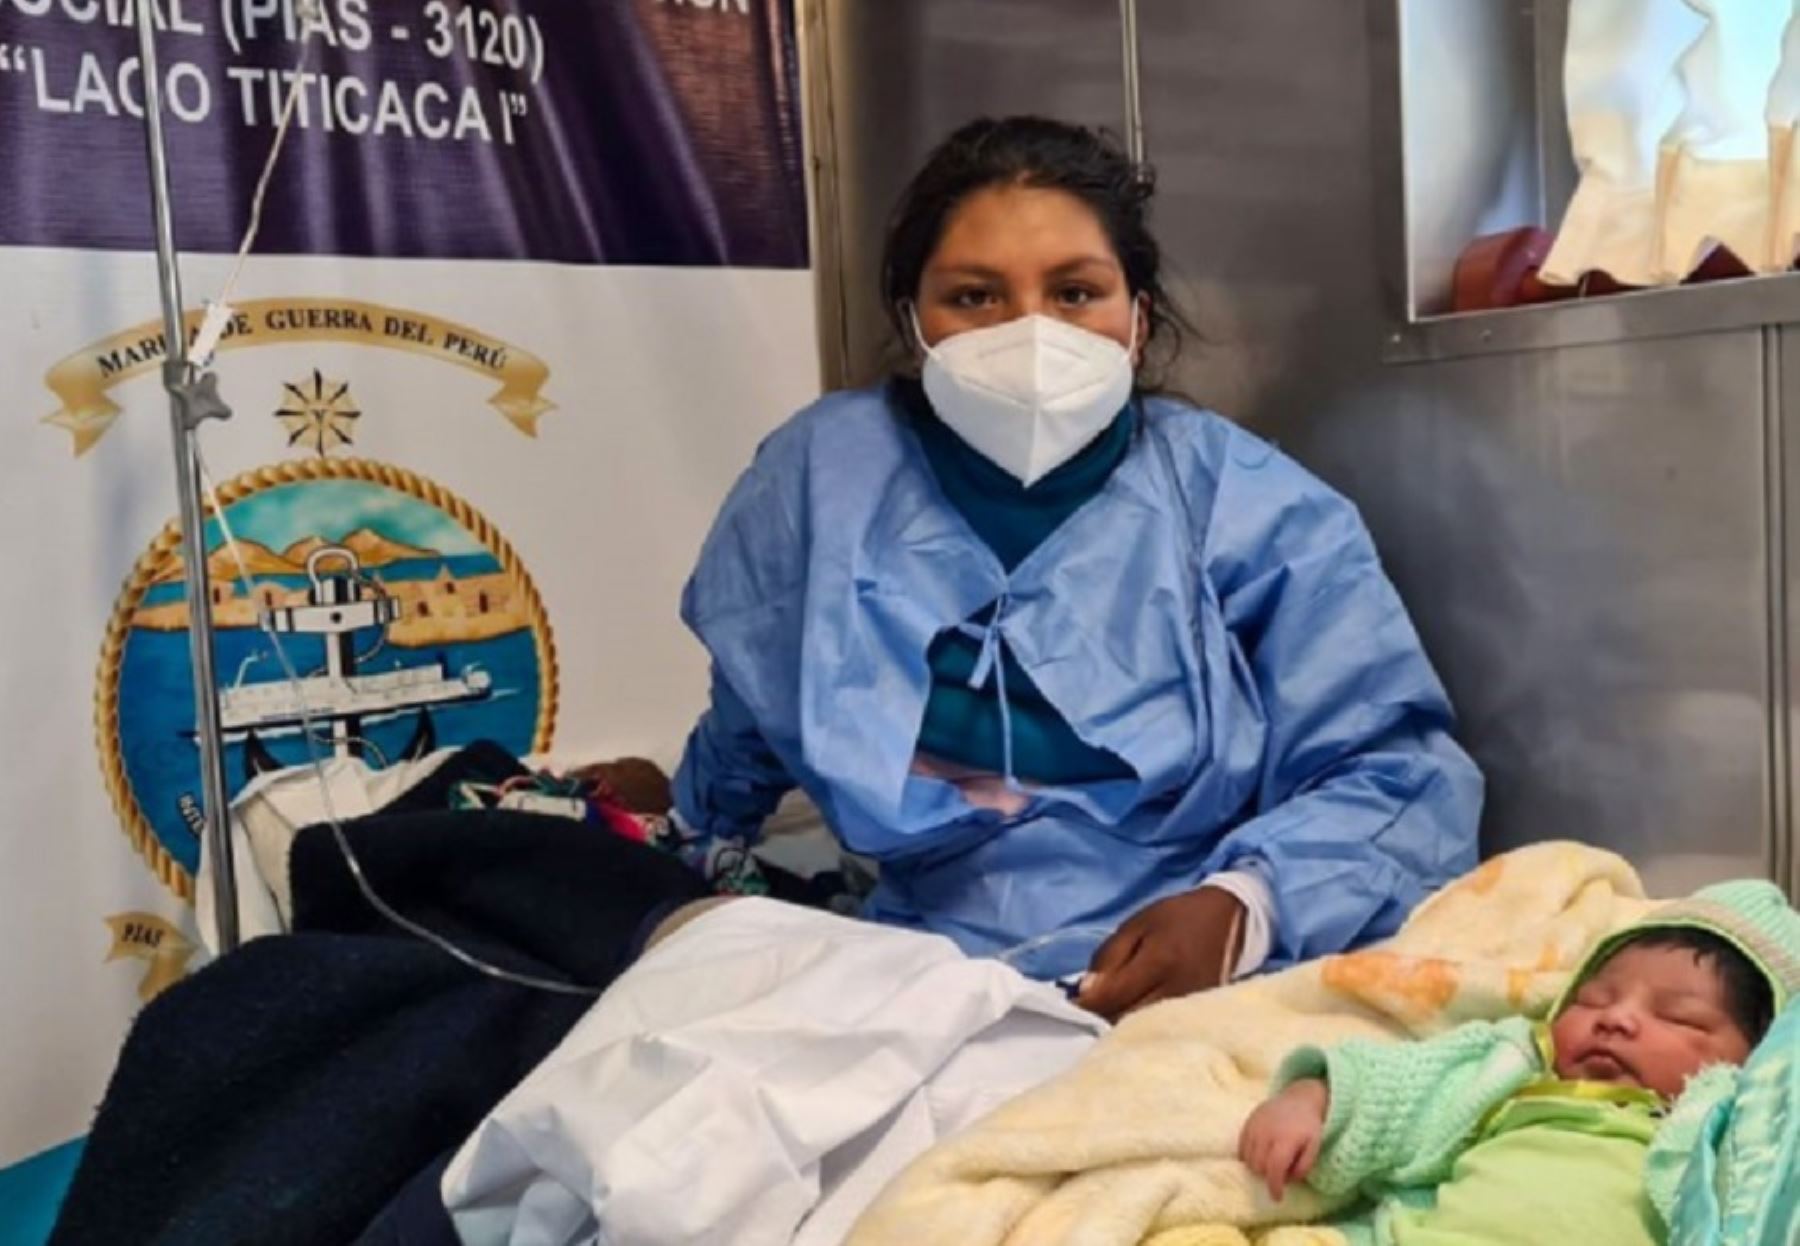 La PIAS Lago Titicaca I se convirtió por primera vez en su historia en una sala de parto, luego de que el personal médico a bordo atendiera de emergencia el nacimiento de la pequeña Dayhi Milek, a orillas de la isla Amantaní, en la región de Puno.